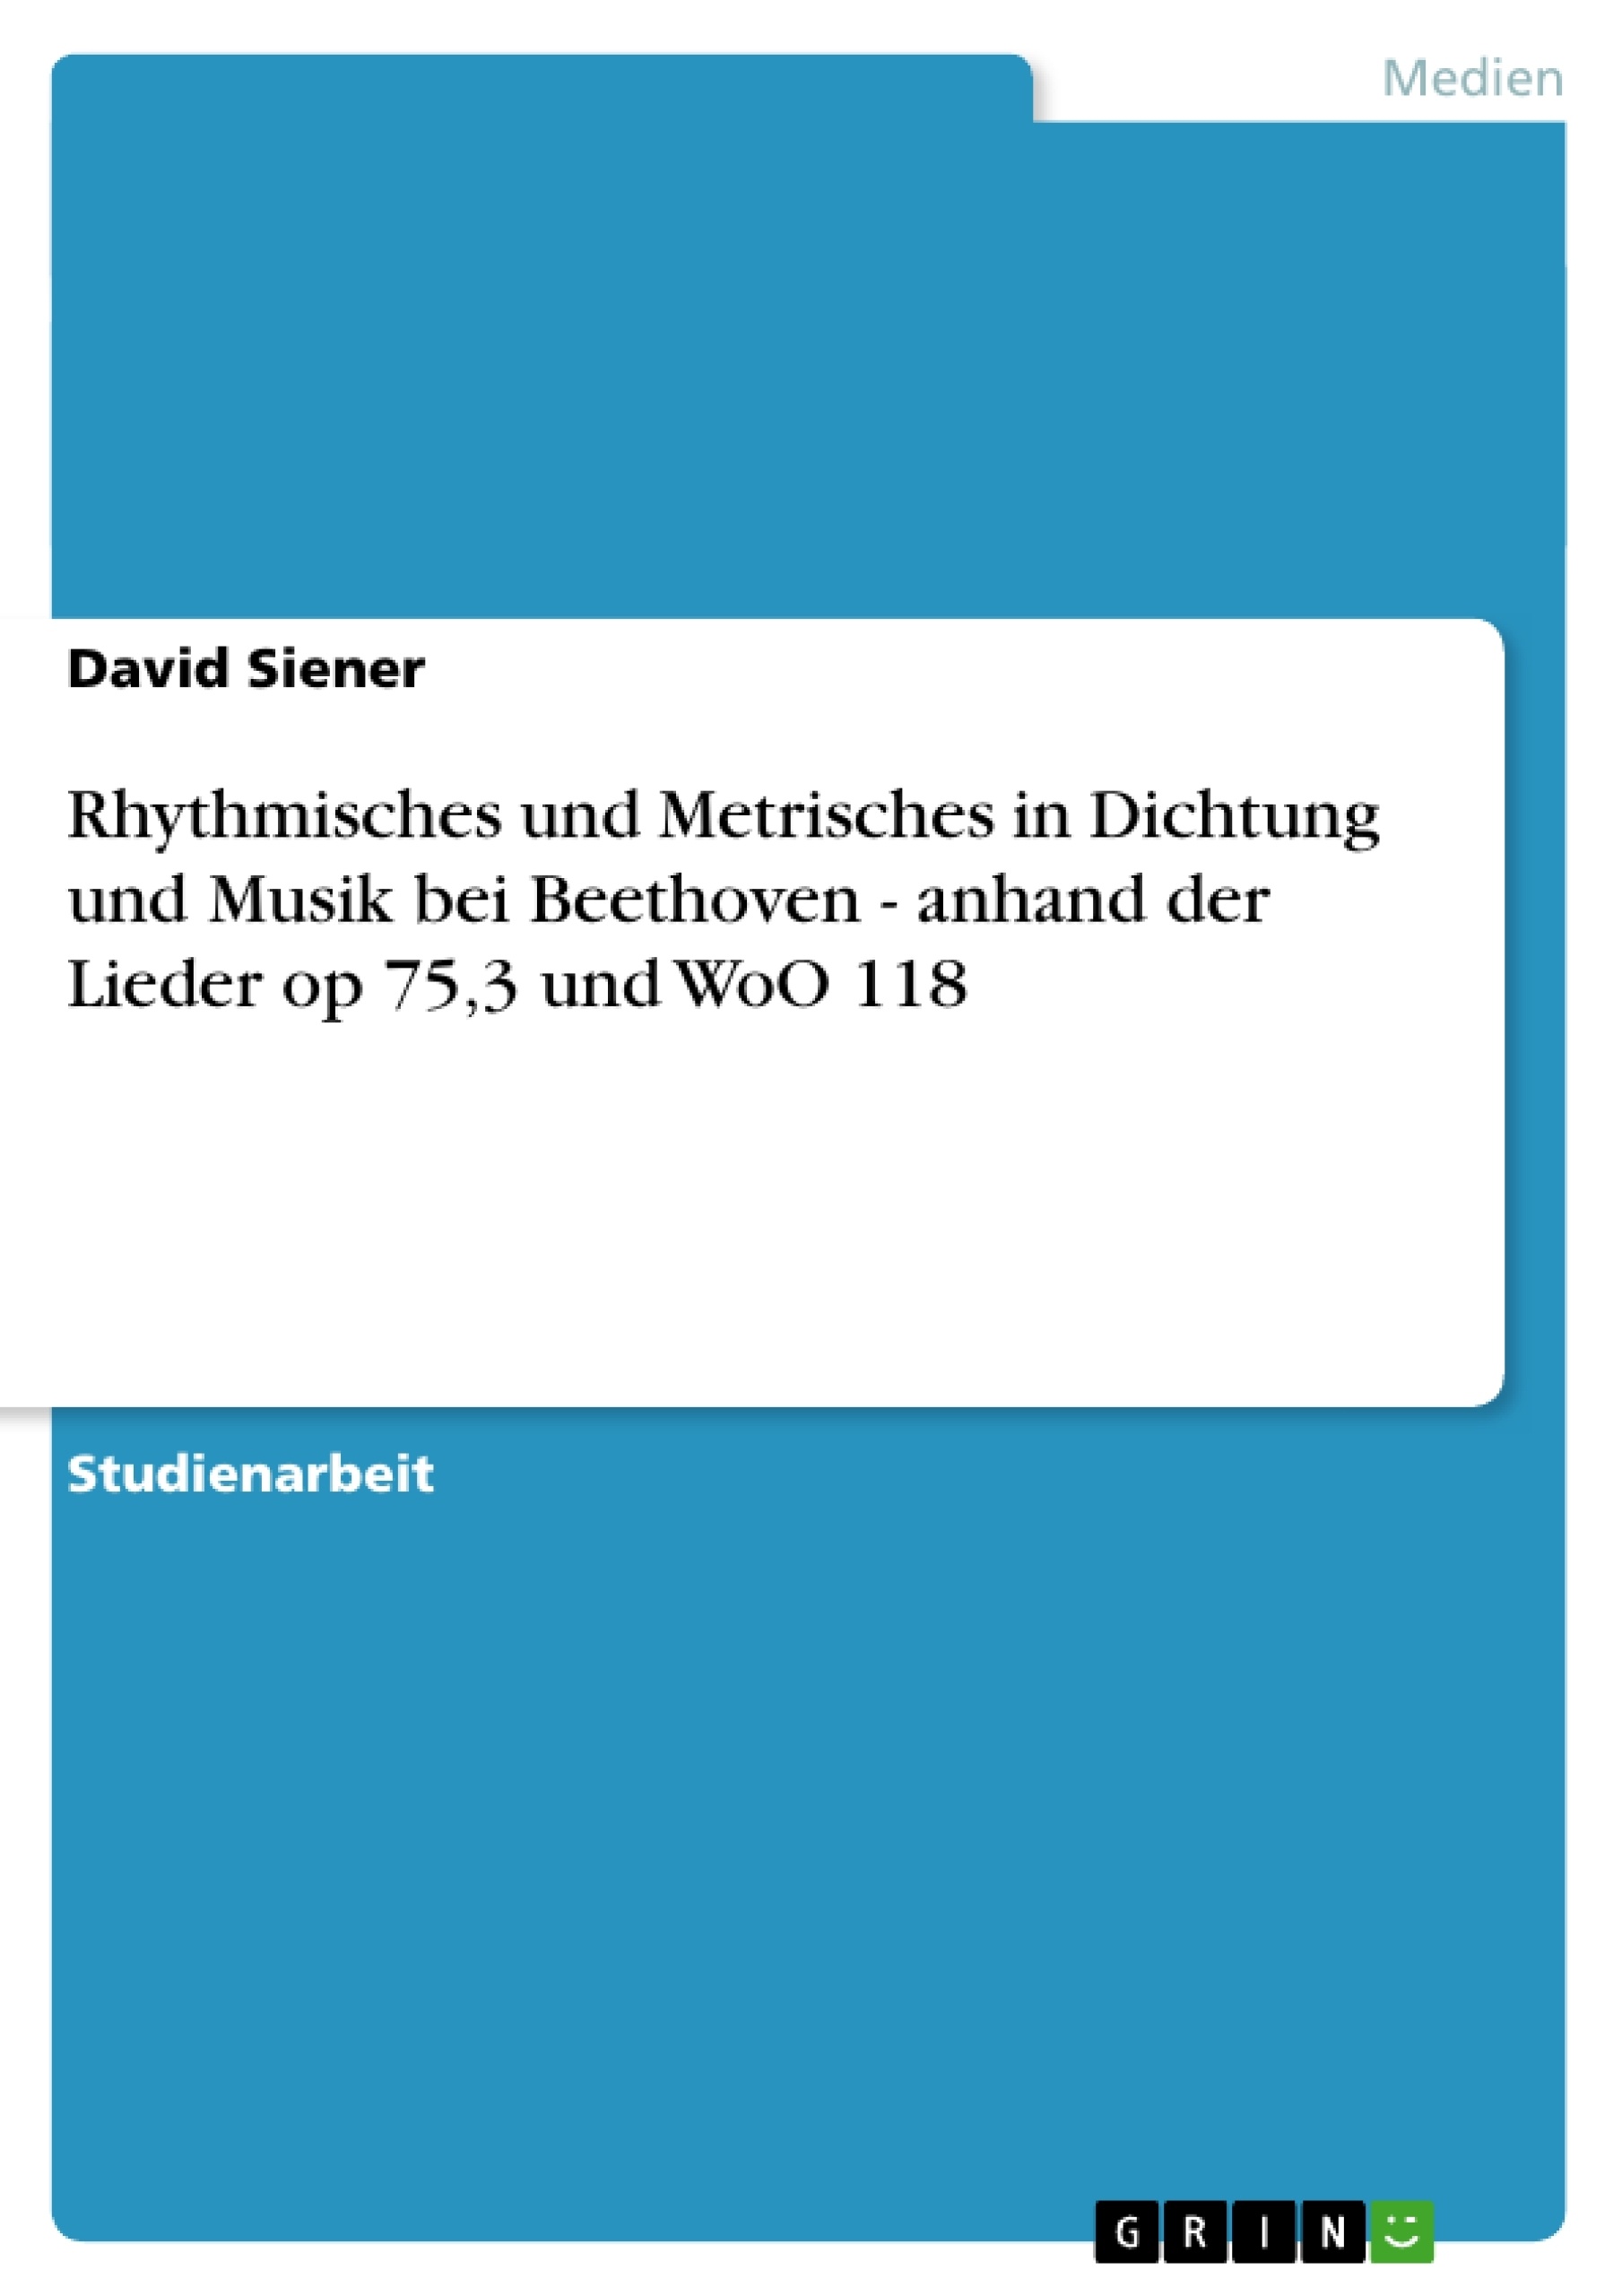 Titre: Rhythmisches und Metrisches in Dichtung und Musik bei Beethoven - anhand der Lieder op 75,3 und WoO 118